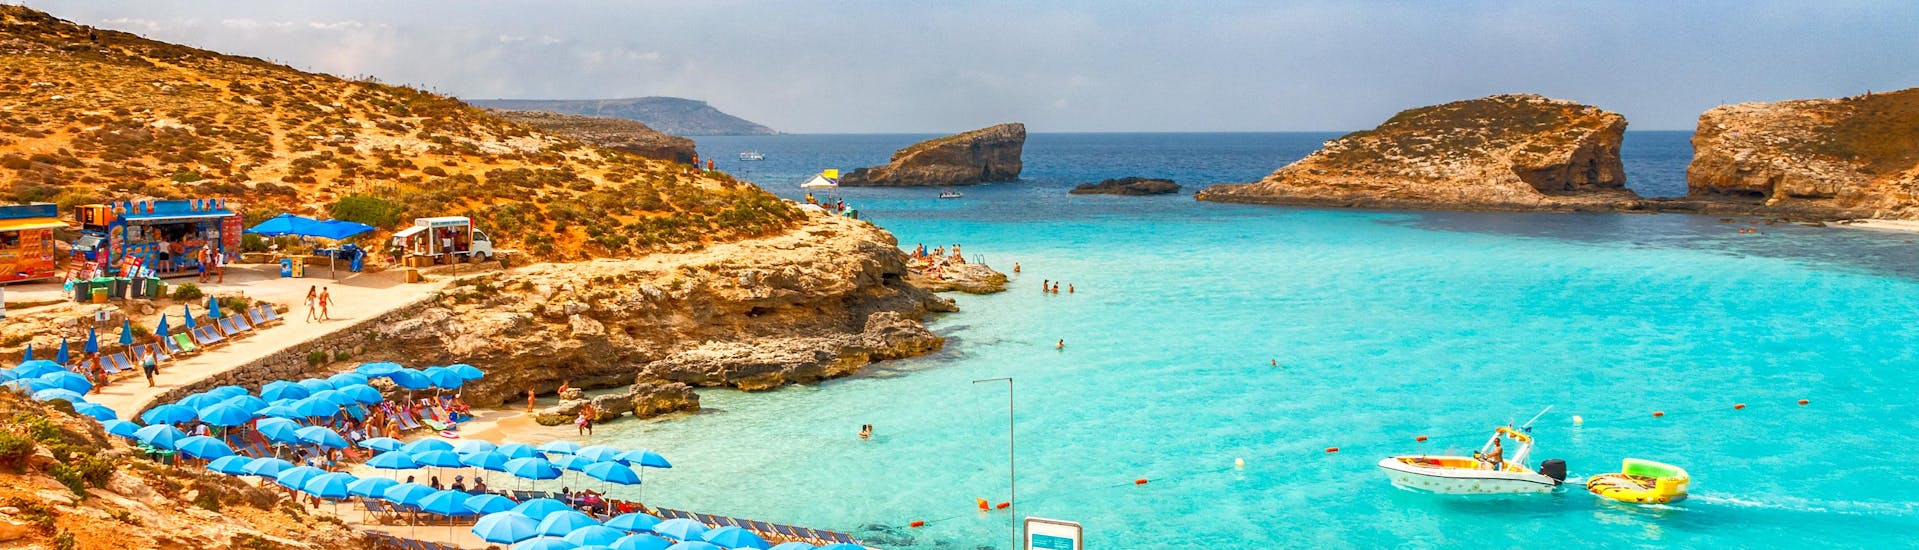 Una spiaggia di Malta dove i fornitori offrono le loro attività di sport acquatici durante la stagione estiva. 